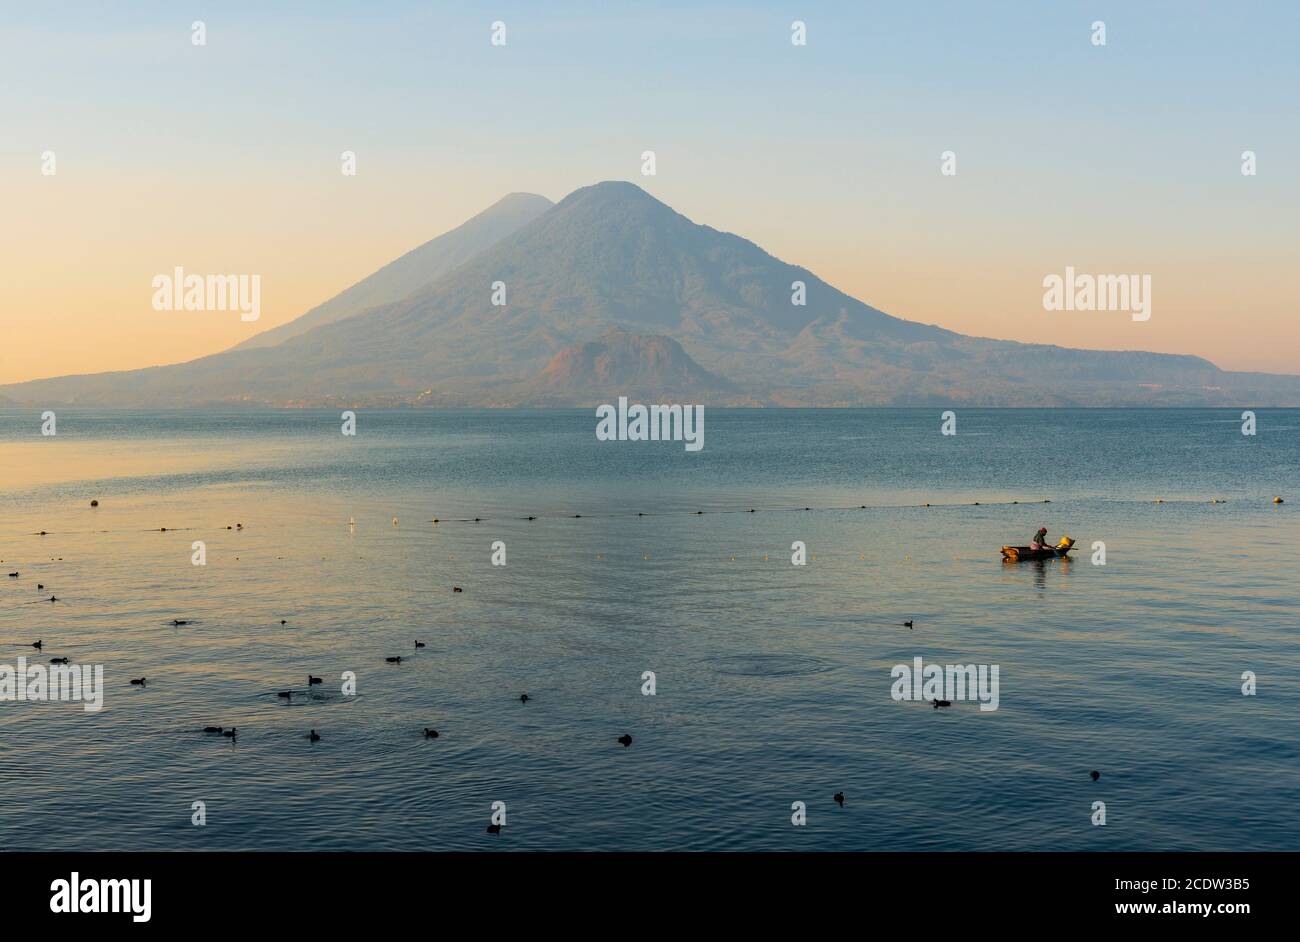 Pescatore che controlla le sue reti per i pesci nel lago Atitlan all'alba con il vulcano Toliman e Atitlan sullo sfondo, Panajachel, Guatemala. Foto Stock